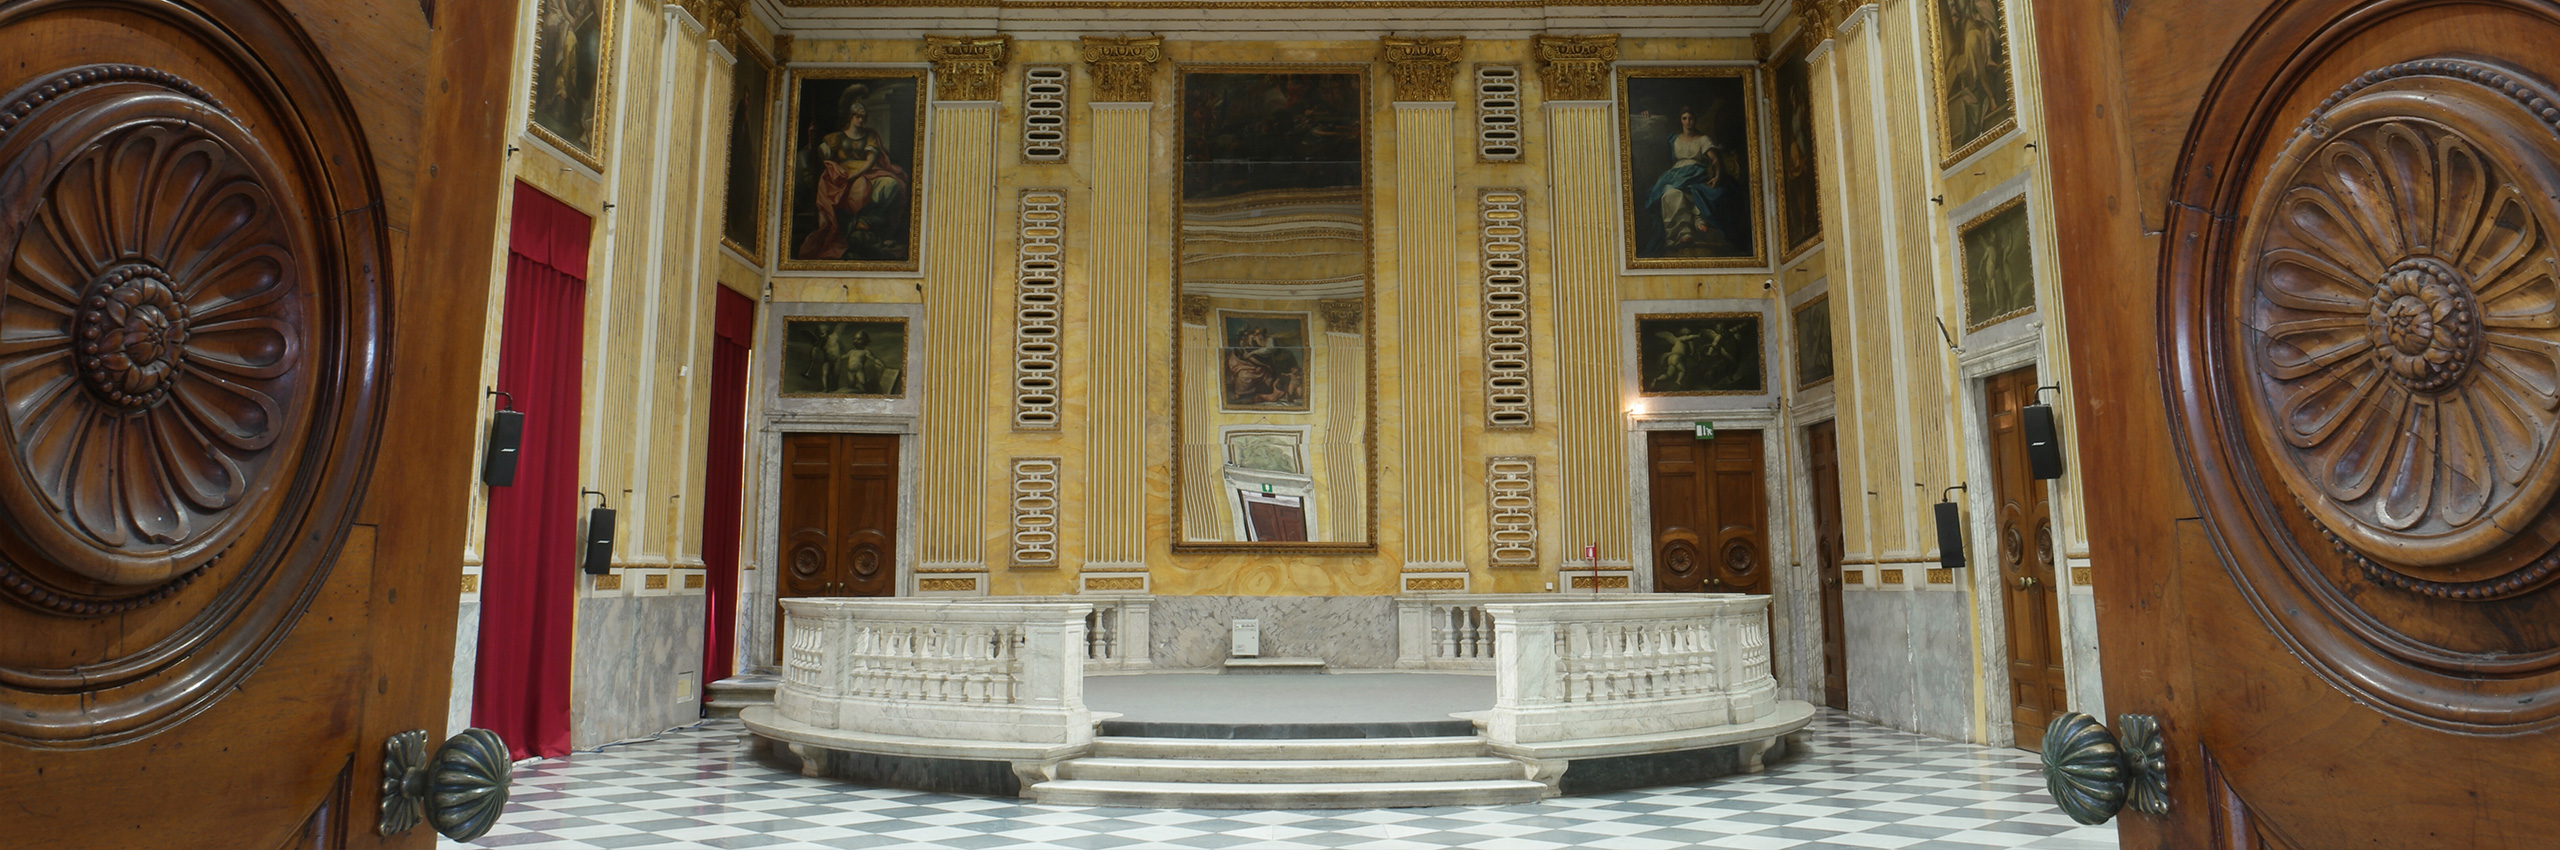 Palazzo Ducale - Minor Consiglio Hall